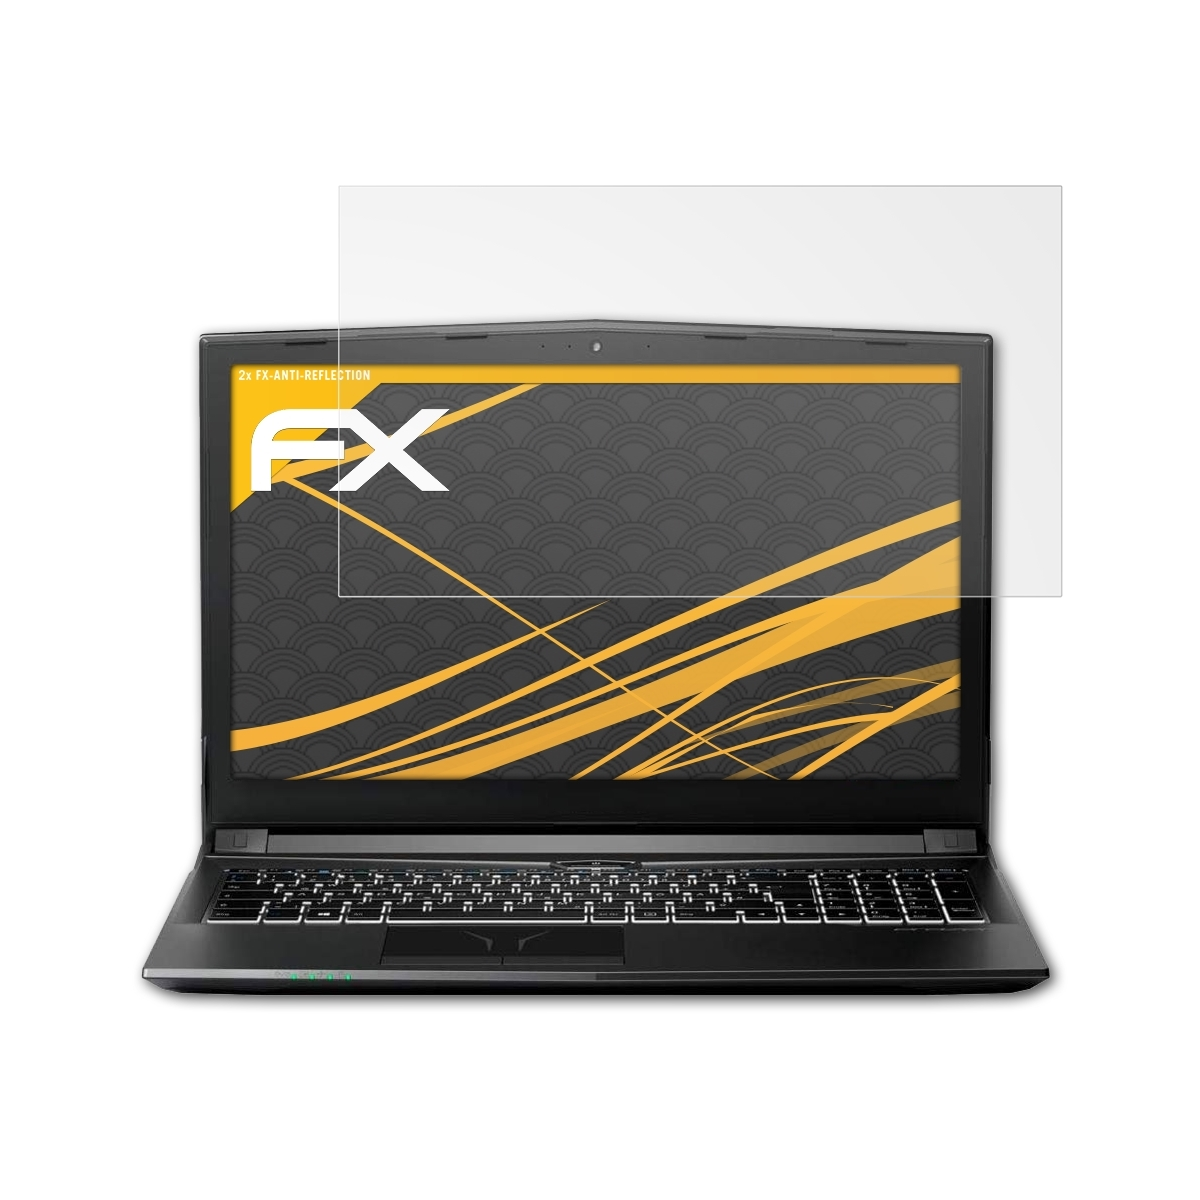 ATFOLIX 2x FX-Antireflex Displayschutz(für Medion P6605 (MD61490)) Erazer